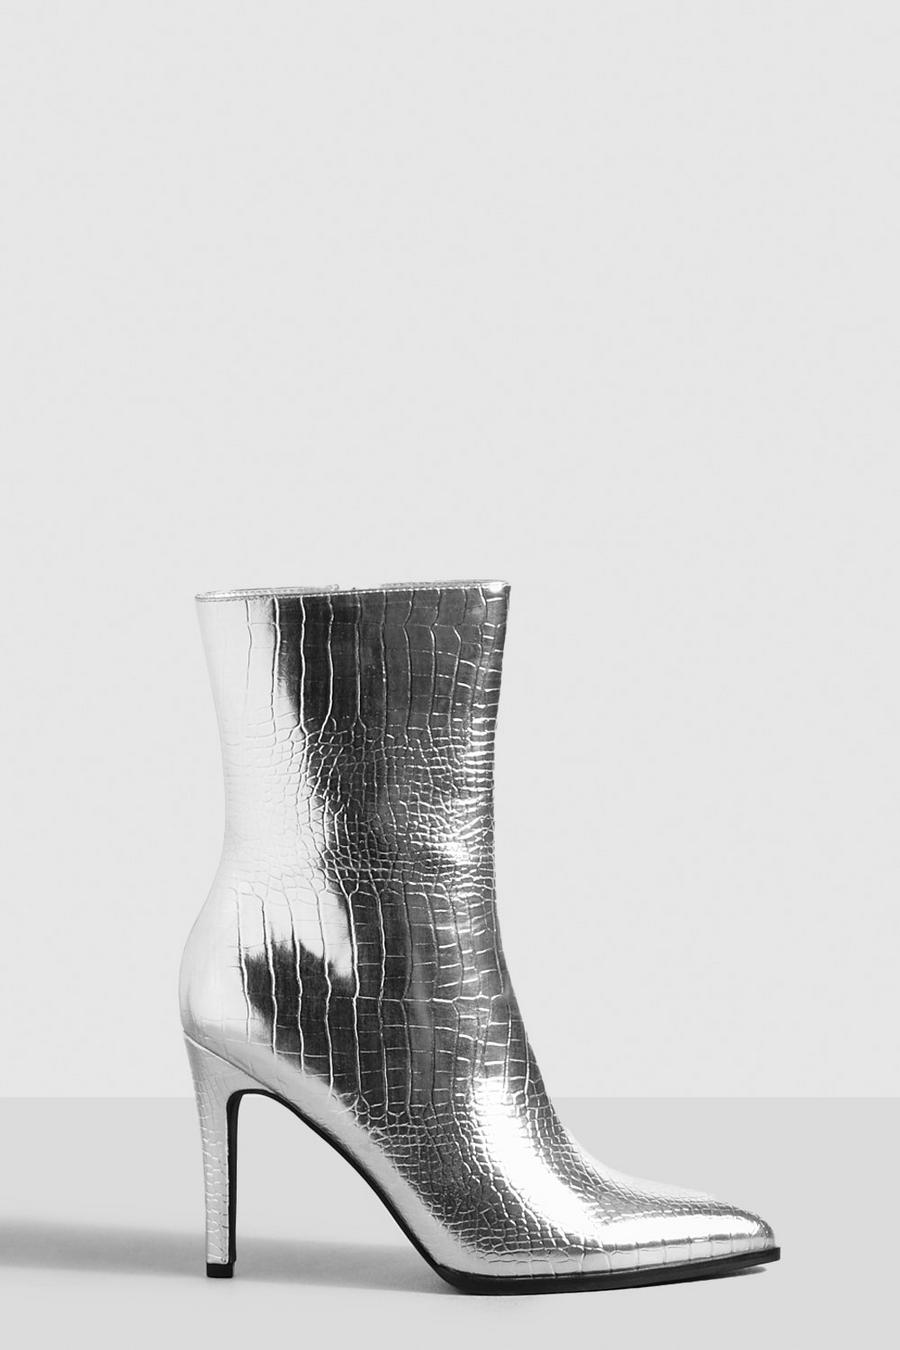 Stivali al polpaccio a calzata ampia effetto coccodrillo con tacco a spillo, Silver image number 1